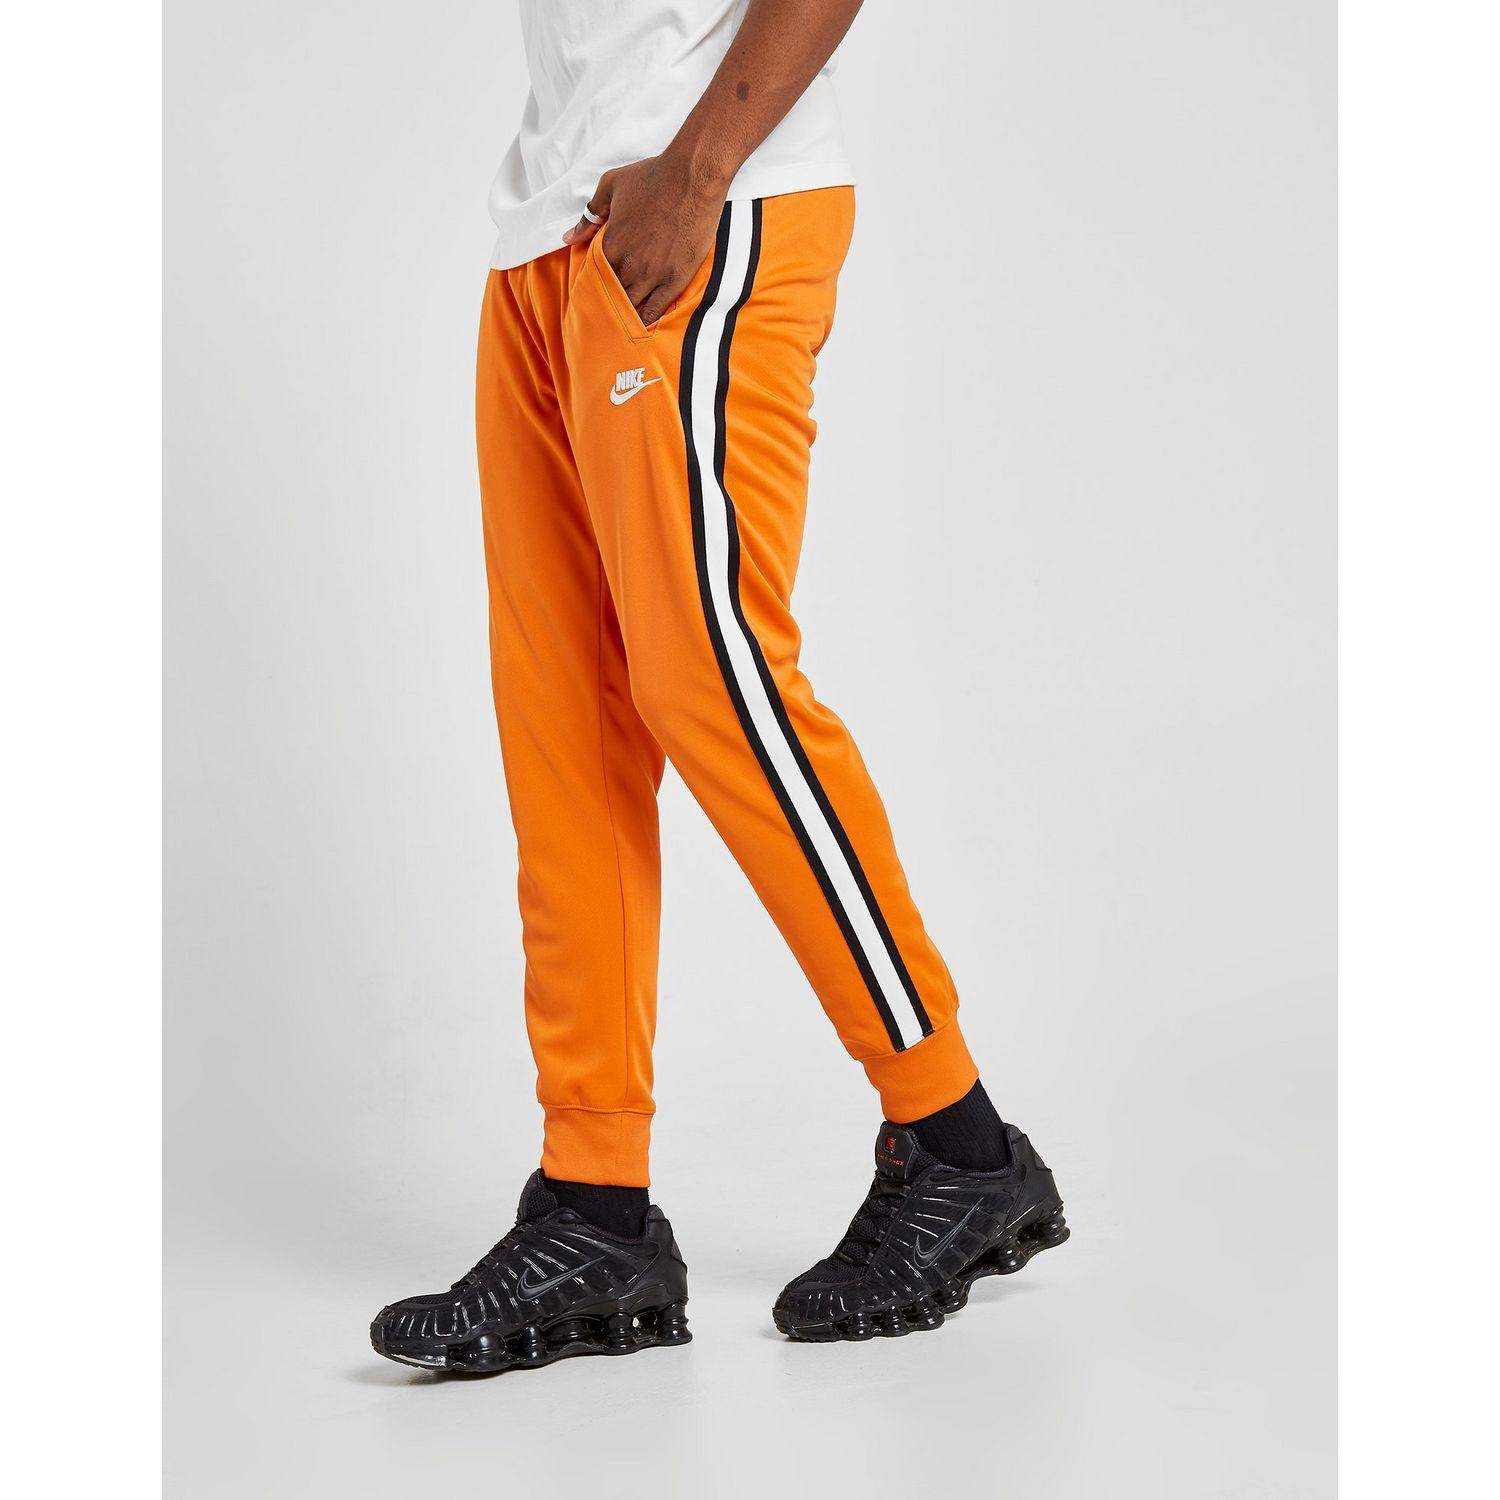 nike orange pants